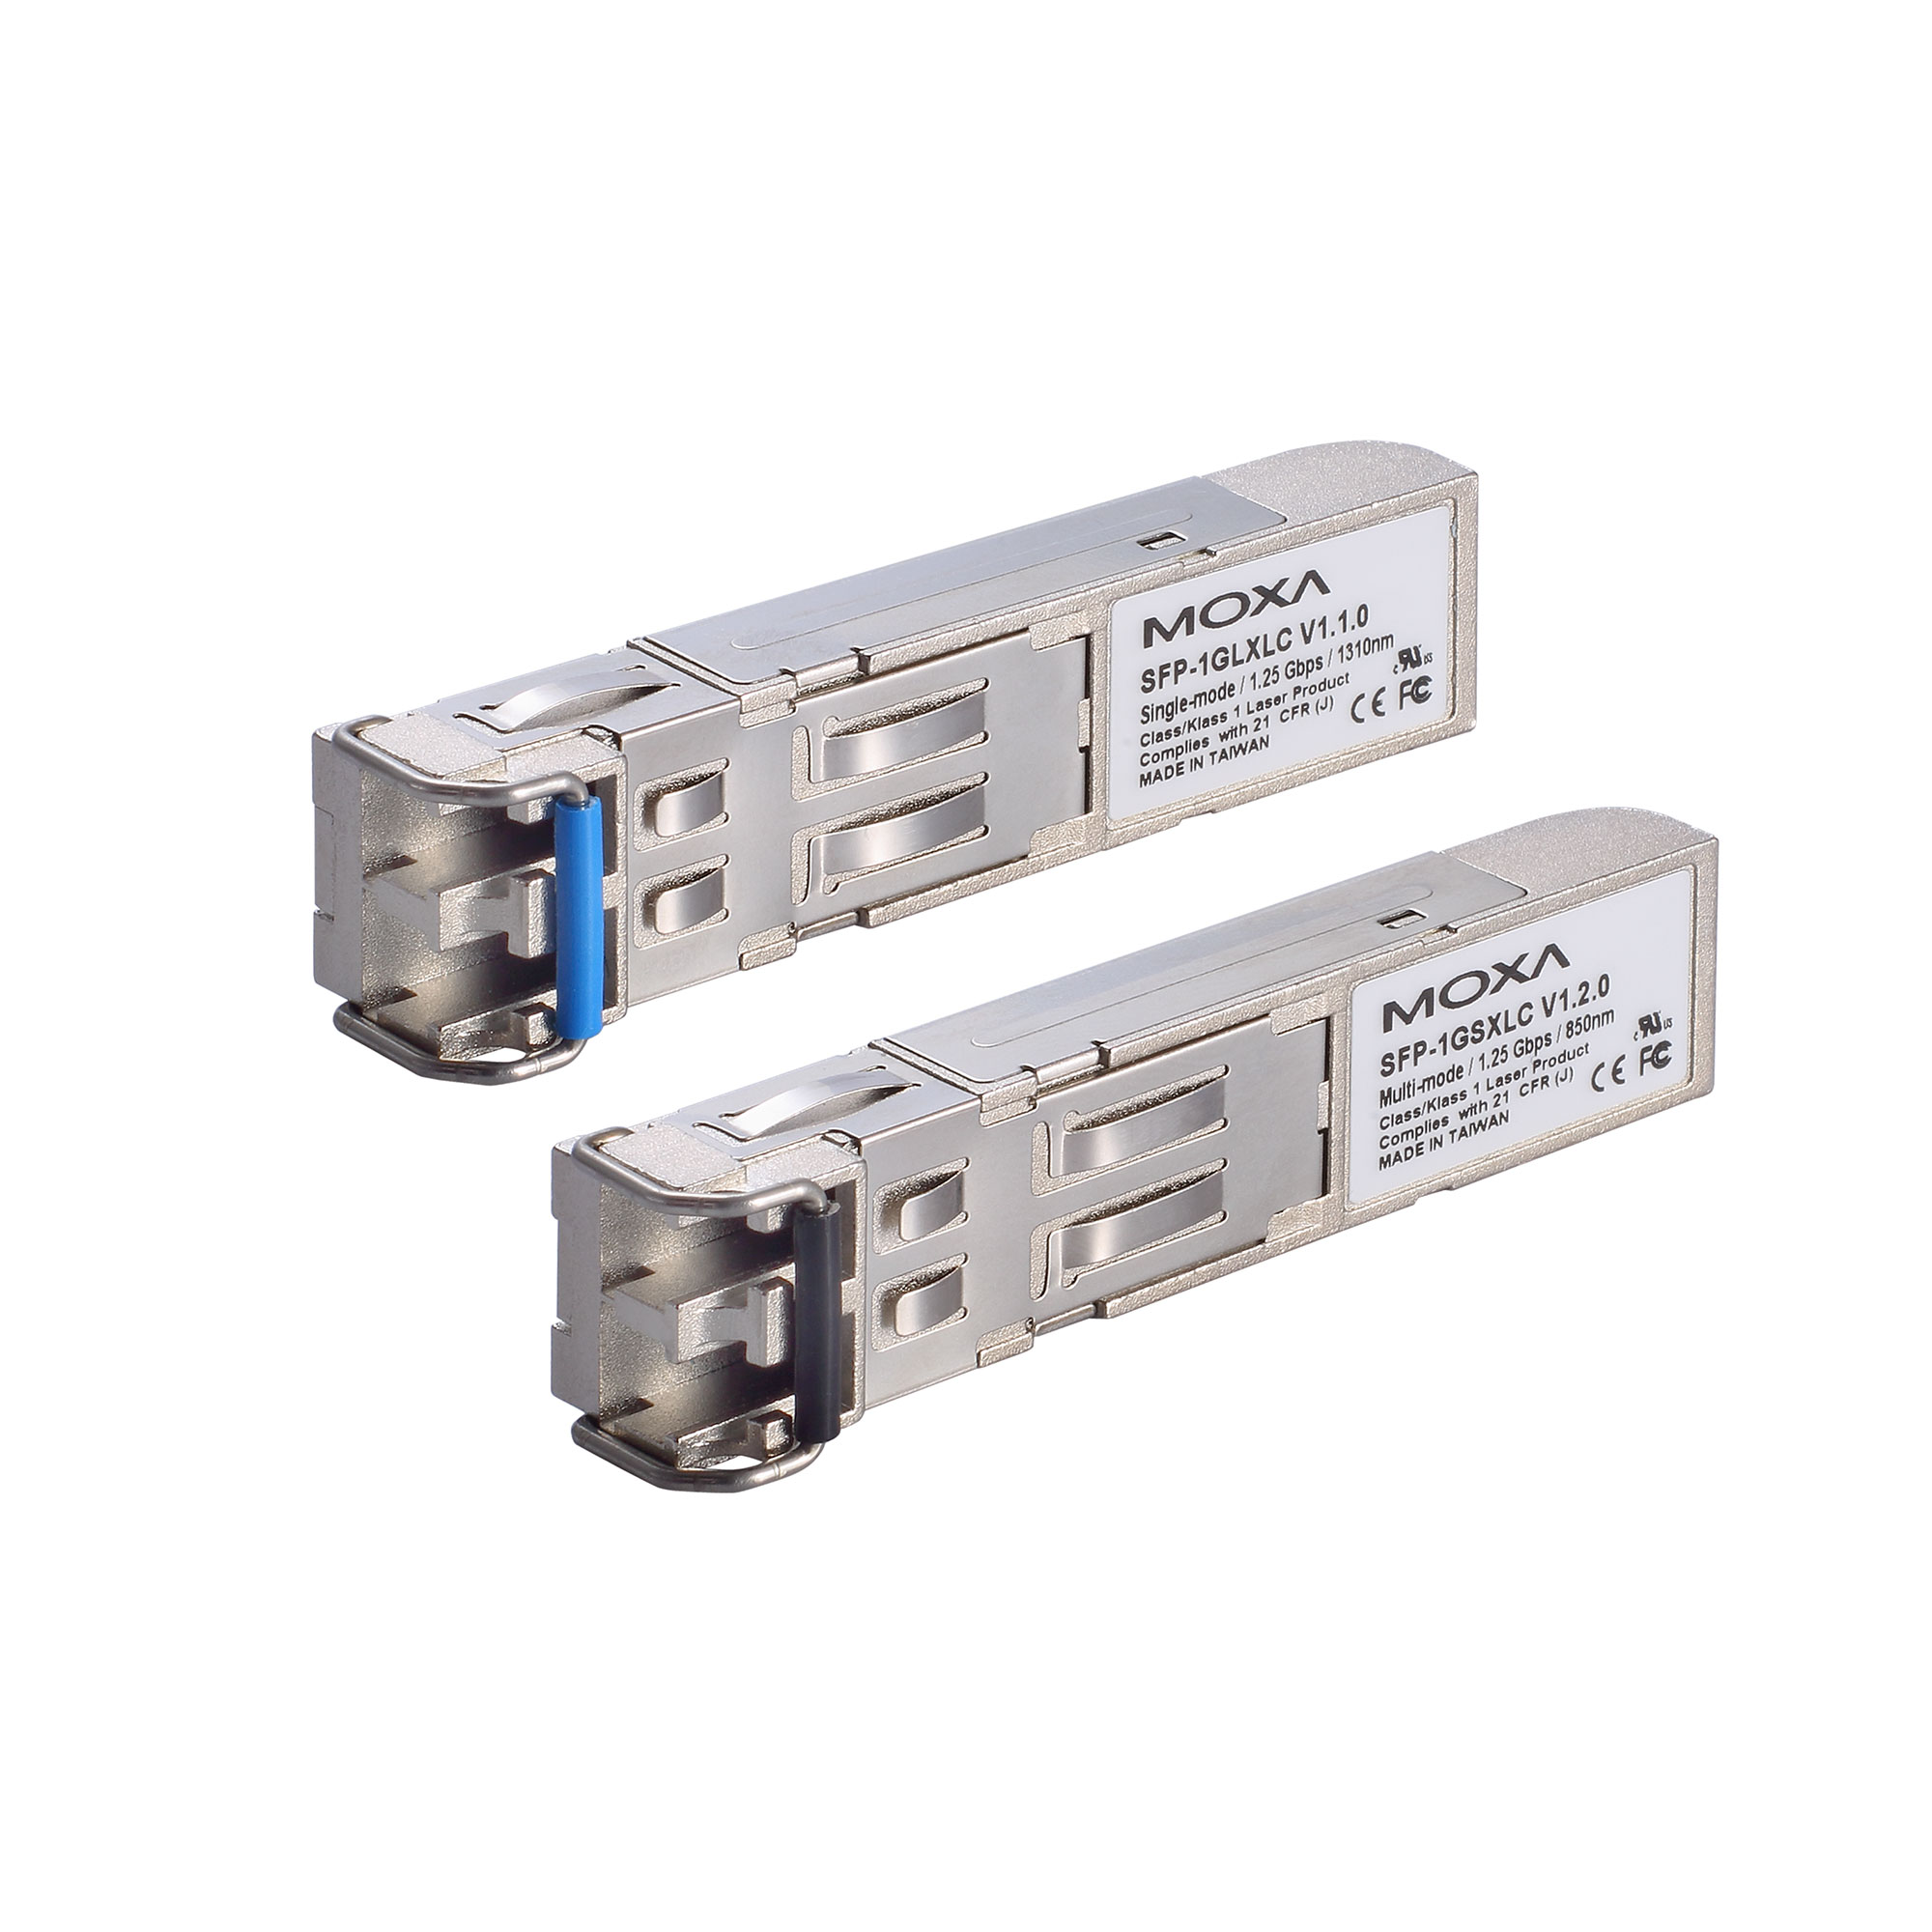 Sfp 1g Series Gigabit Ethernet Sfp Modules Moxa